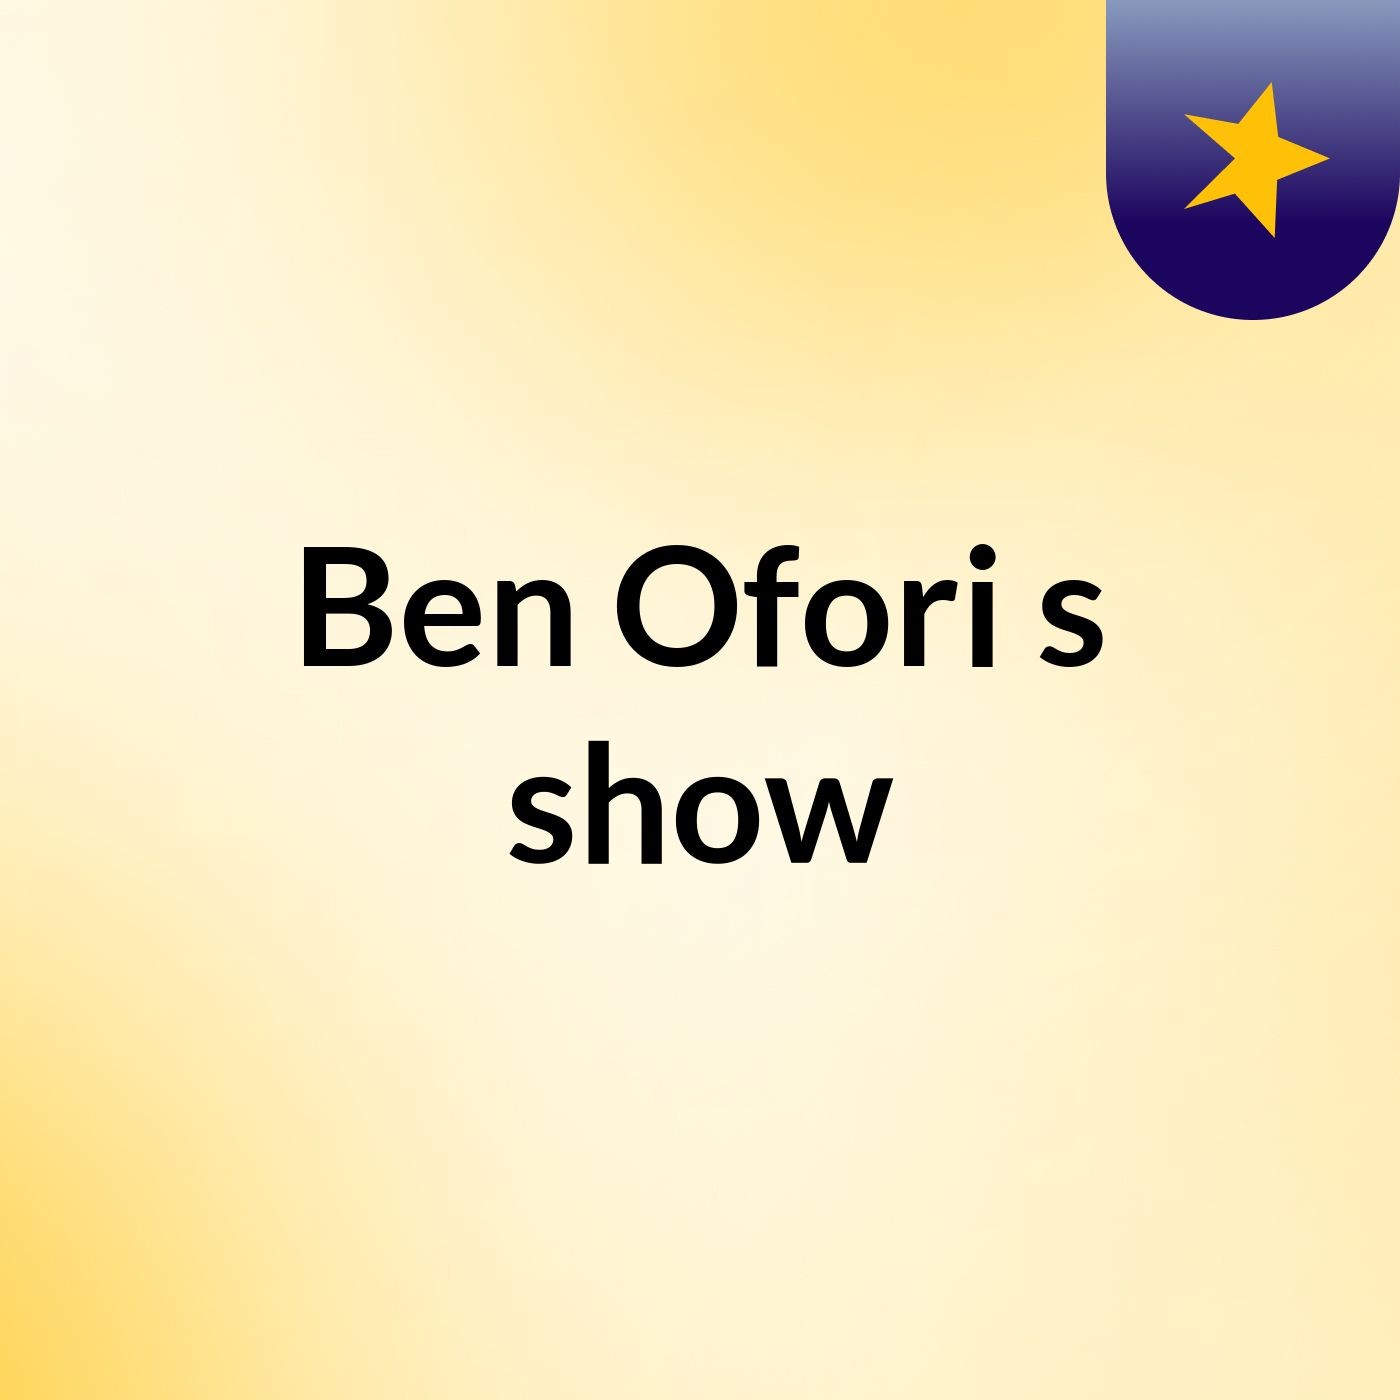 Episode 2 - Ben Ofori's show